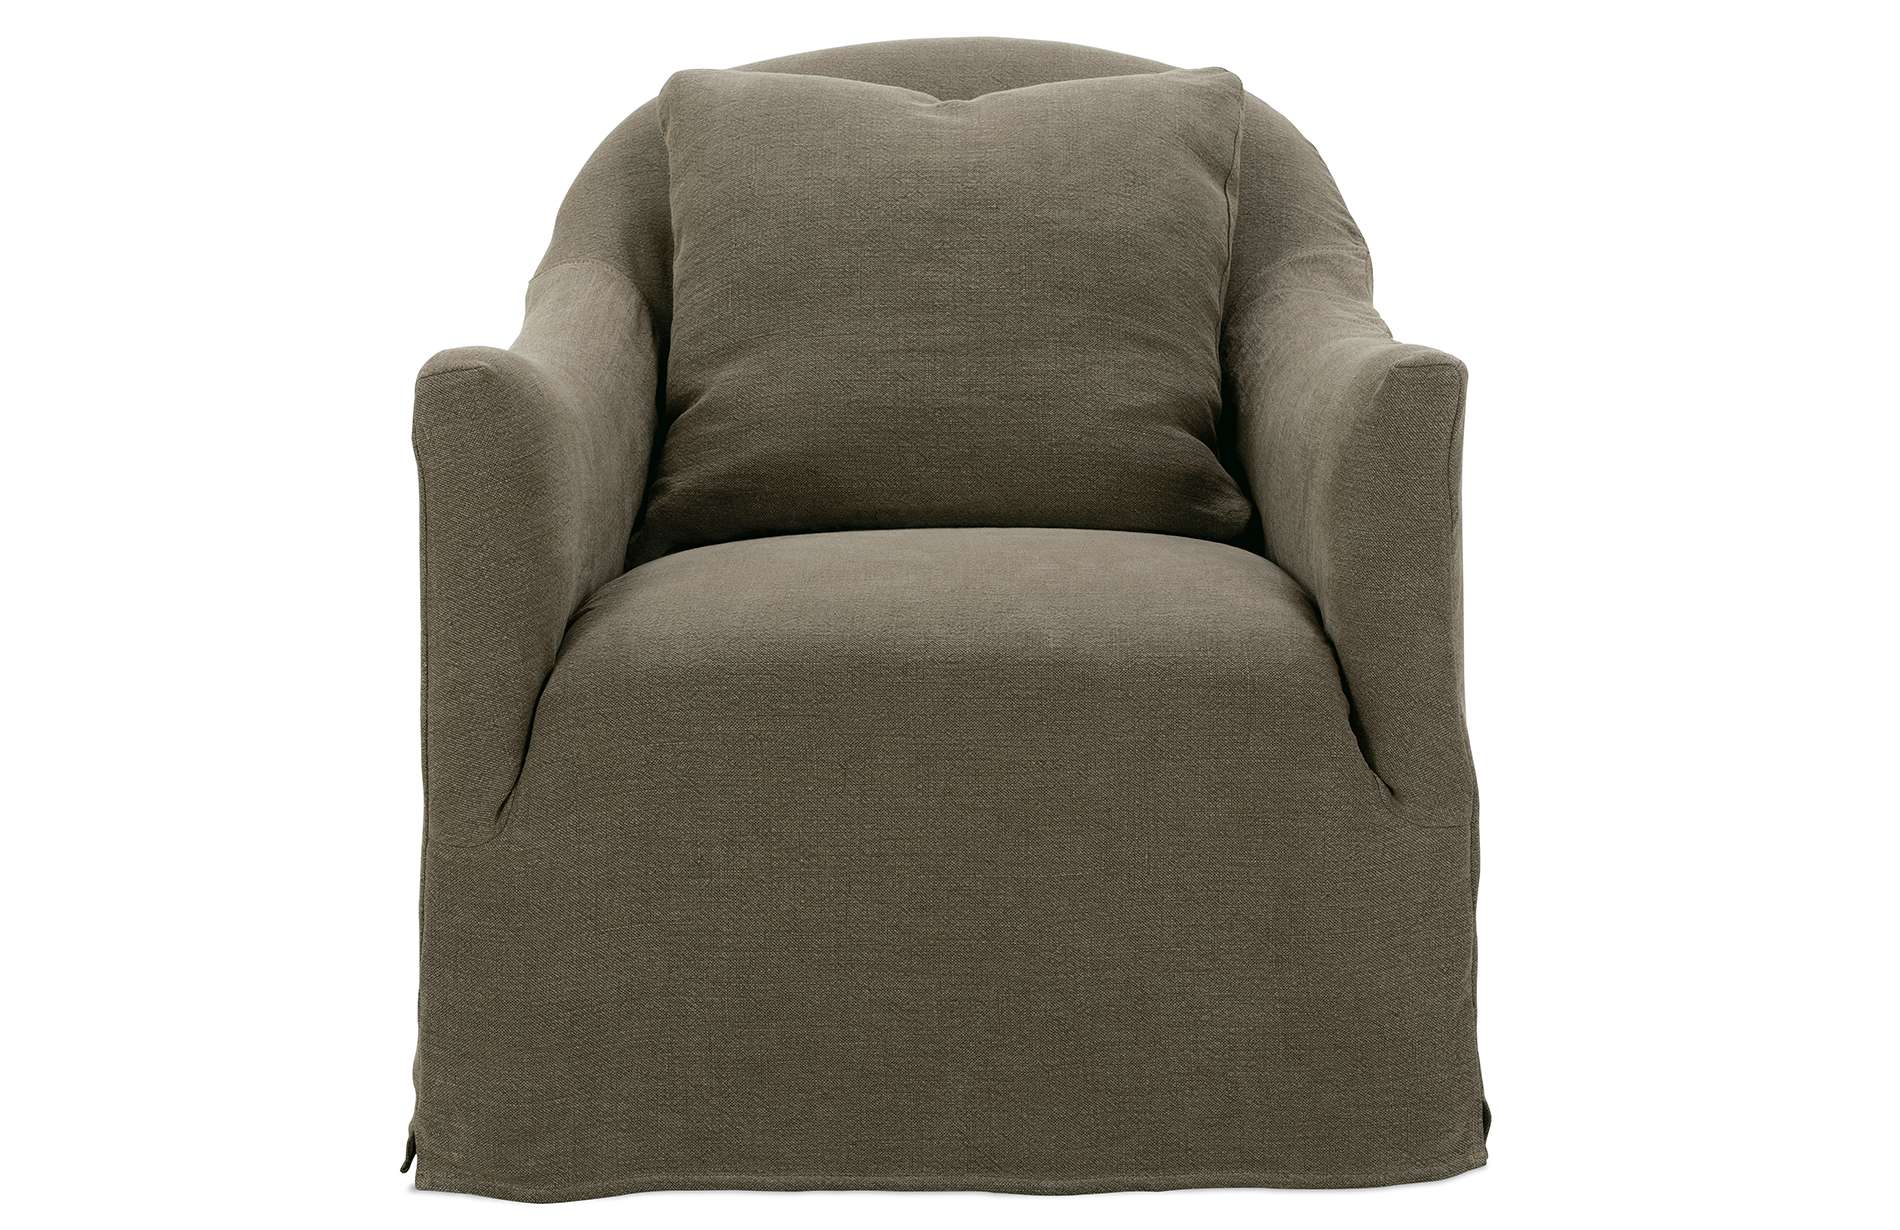 Noel Slip covered chair 